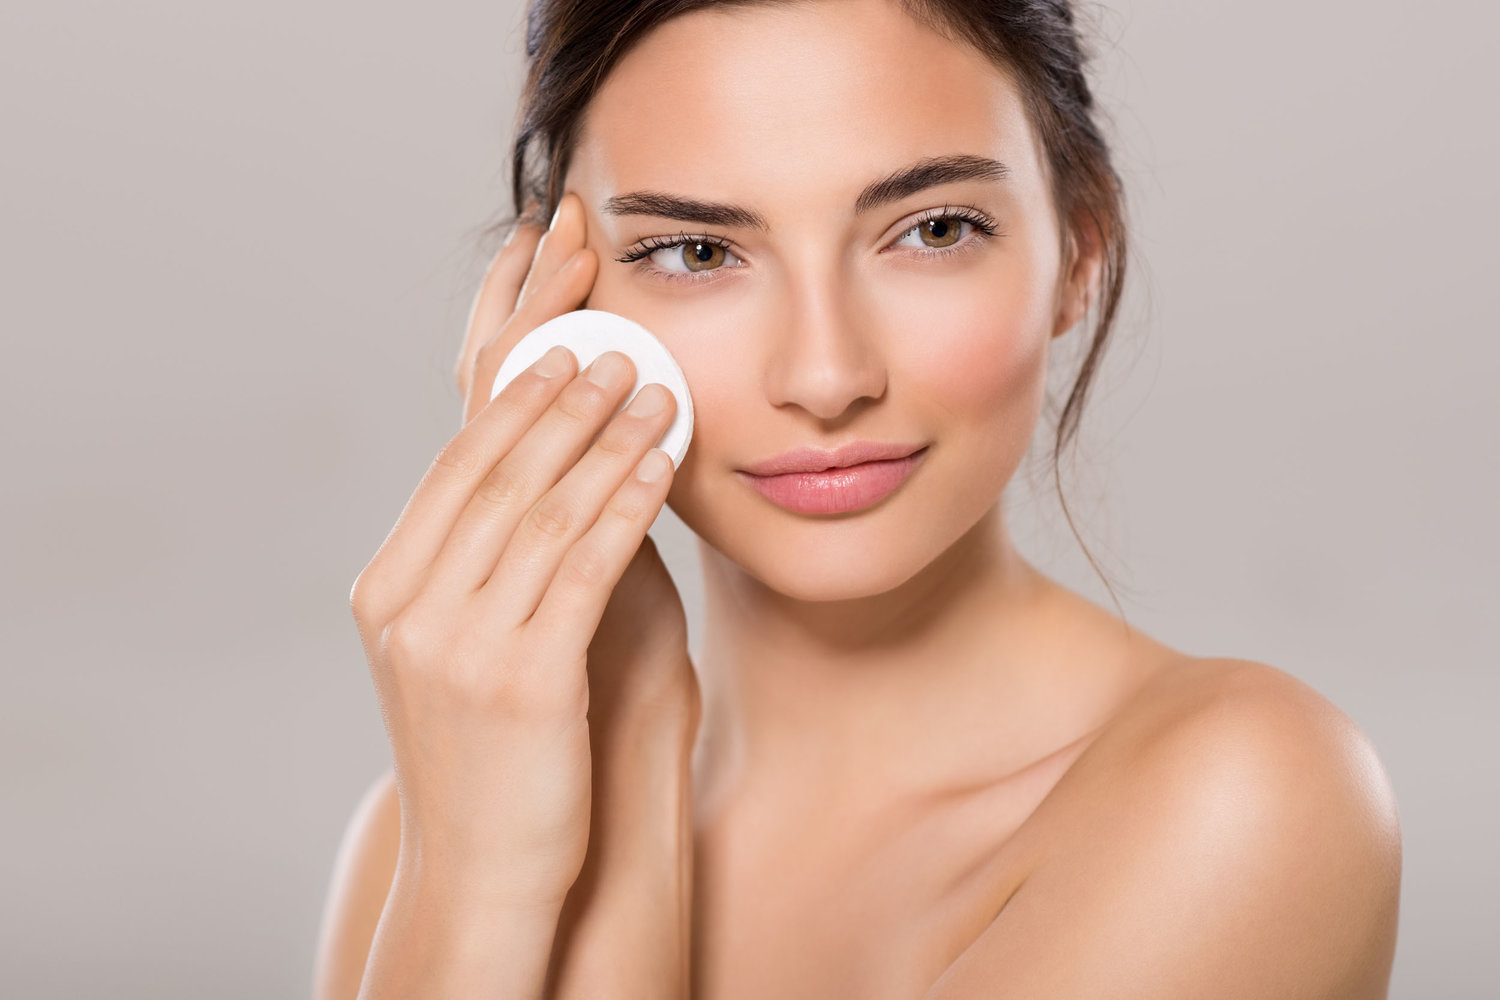 Quy trình tẩy trang đúng cách và an toàn cho da mặt